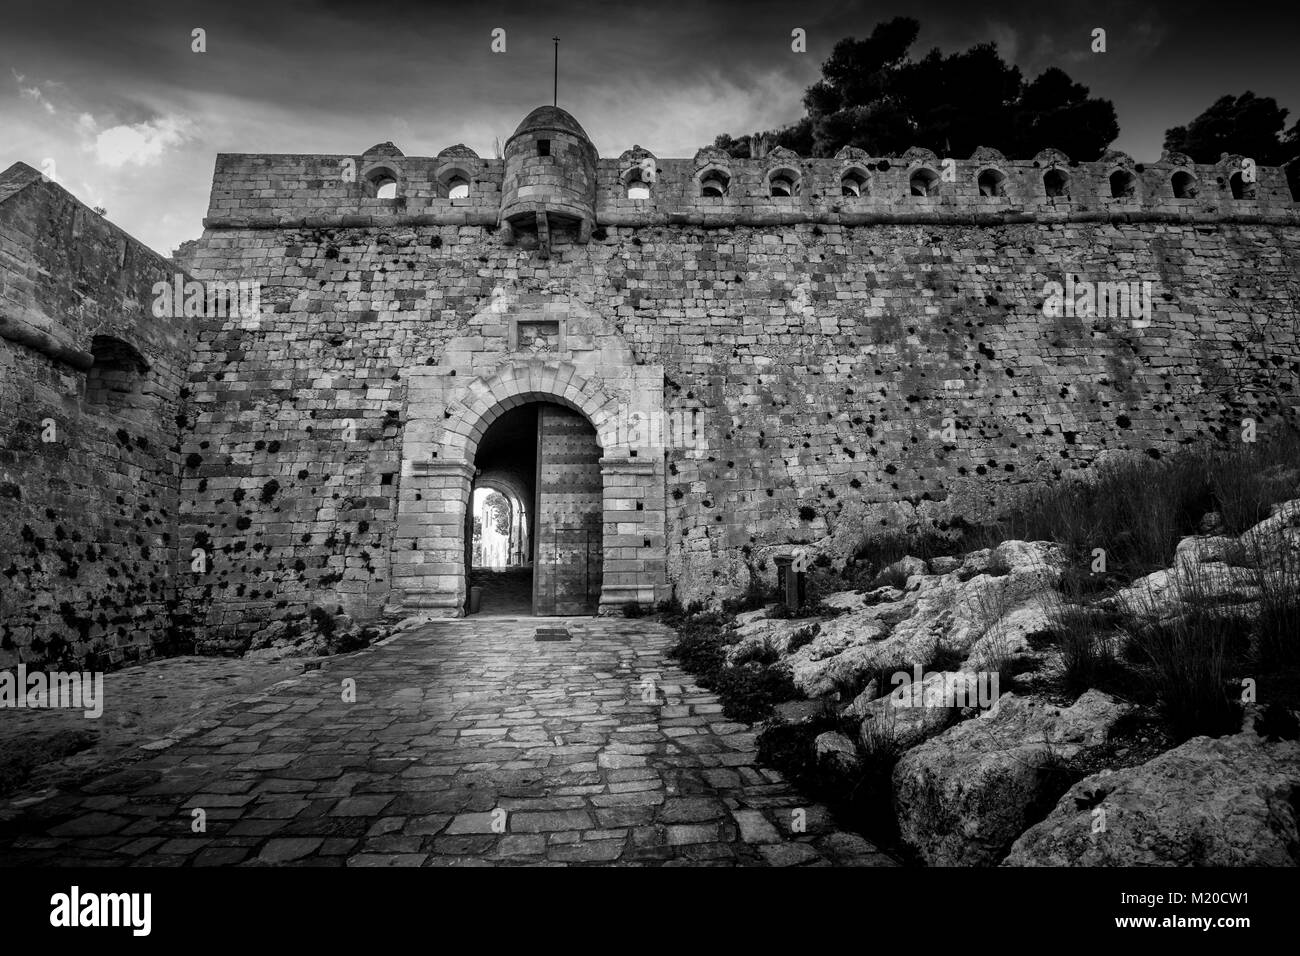 La fortezza veneziana della Fortezza sulla collina presso la vecchia città di Rethimno, Creta, Grecia. Foto Stock